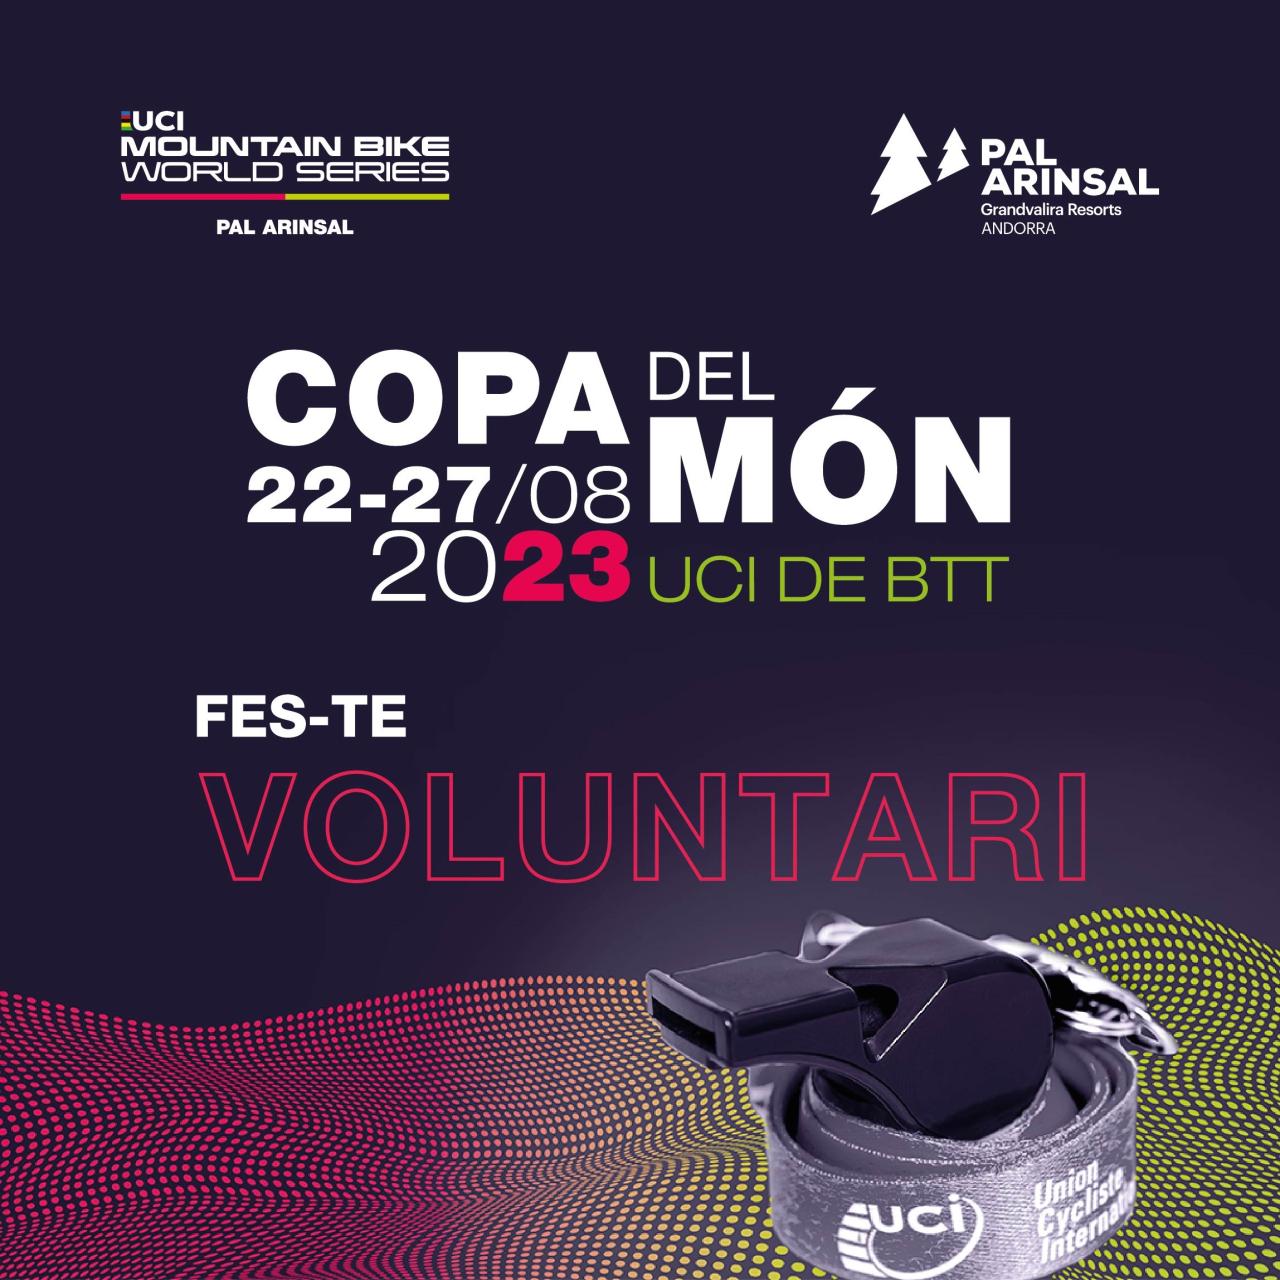 La Copa del Mundo de MTB de Pal Arinsal abre las inscripciones para los voluntarios